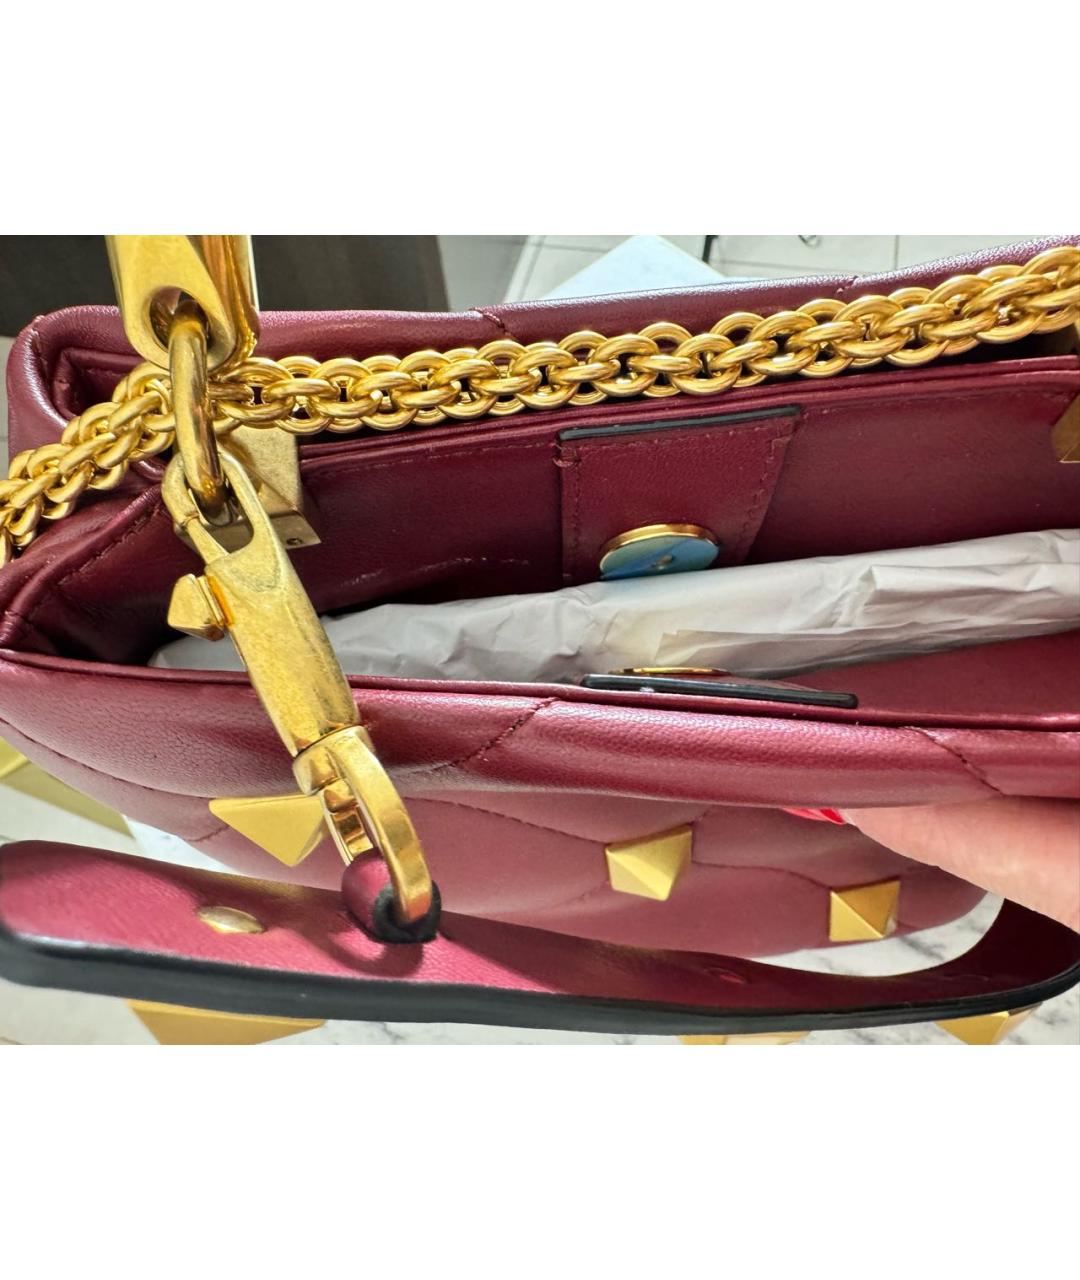 VALENTINO Бордовая кожаная сумка с короткими ручками, фото 3